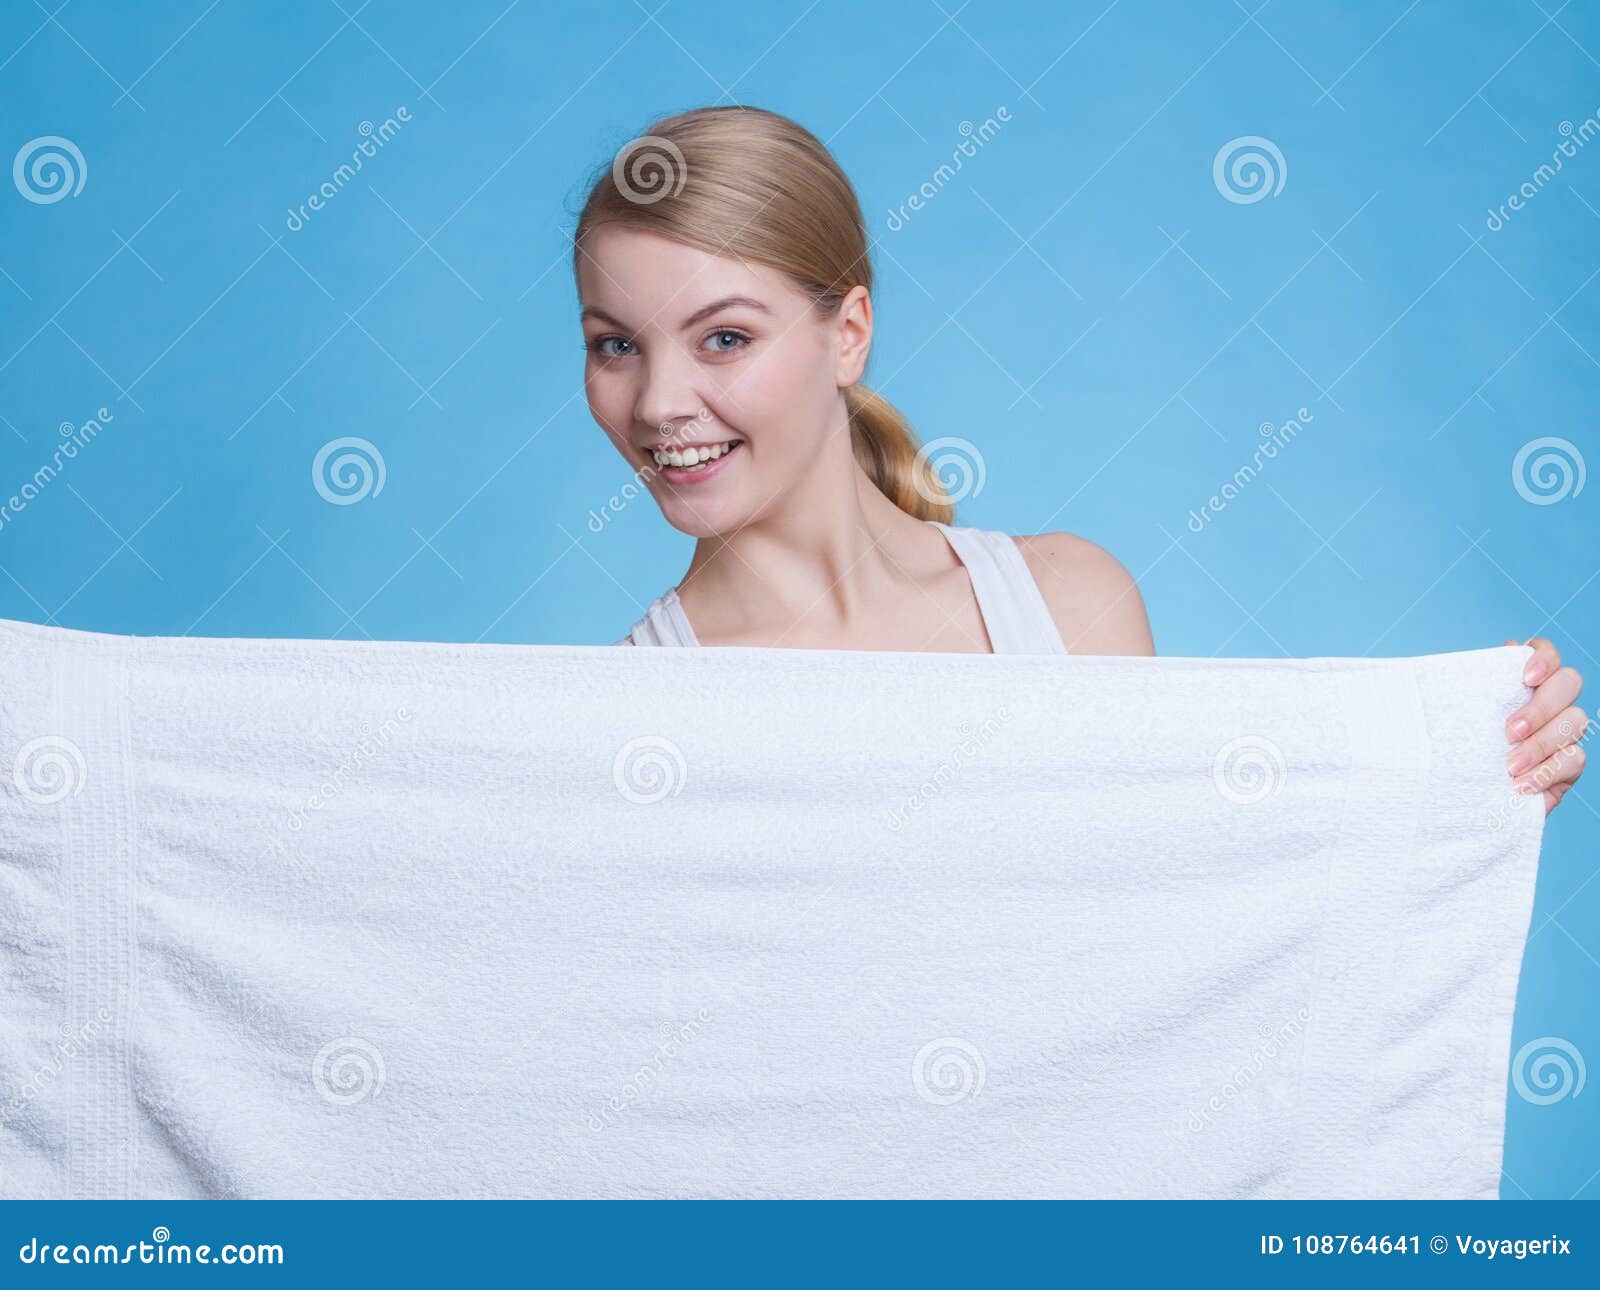 Танцует полотенце. Человек в полотенце. Девушка держит полотенце. Девушка в белом полотенце. Девушка с полотенцем в руках.